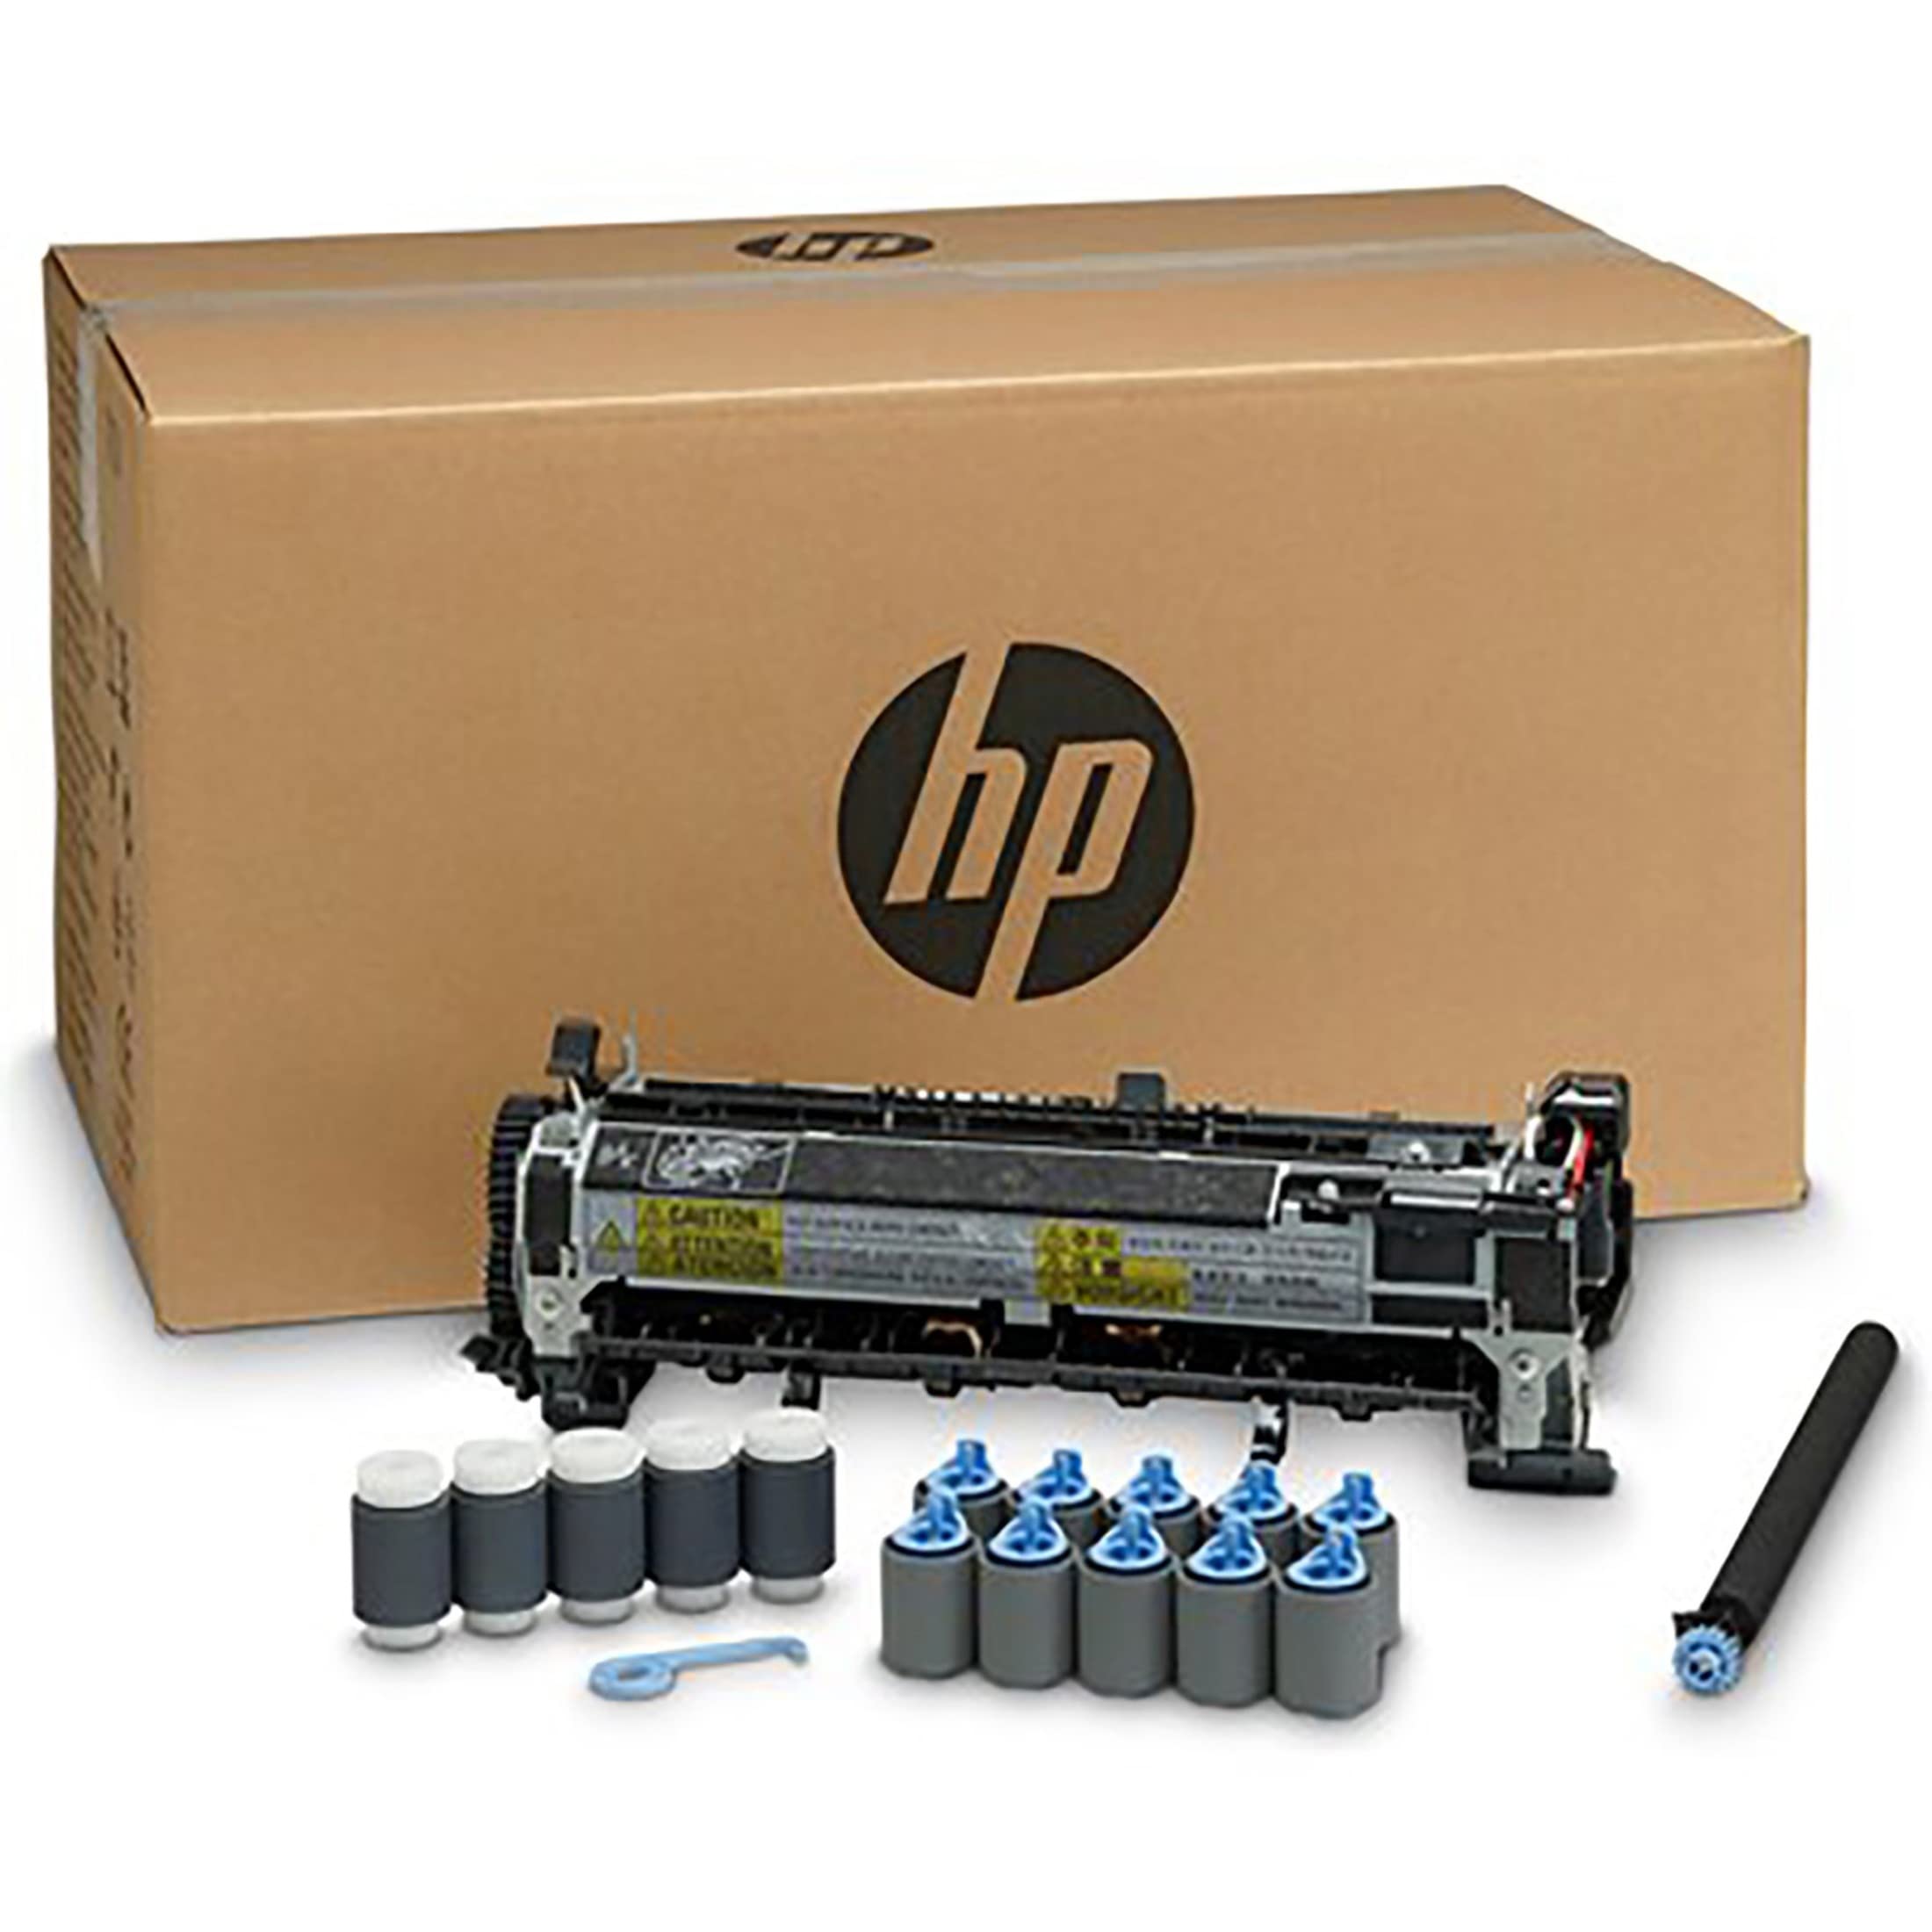 HP ，HEWF2G76A，Laserjet 110V 维护套件，F2G76A，各 1 个